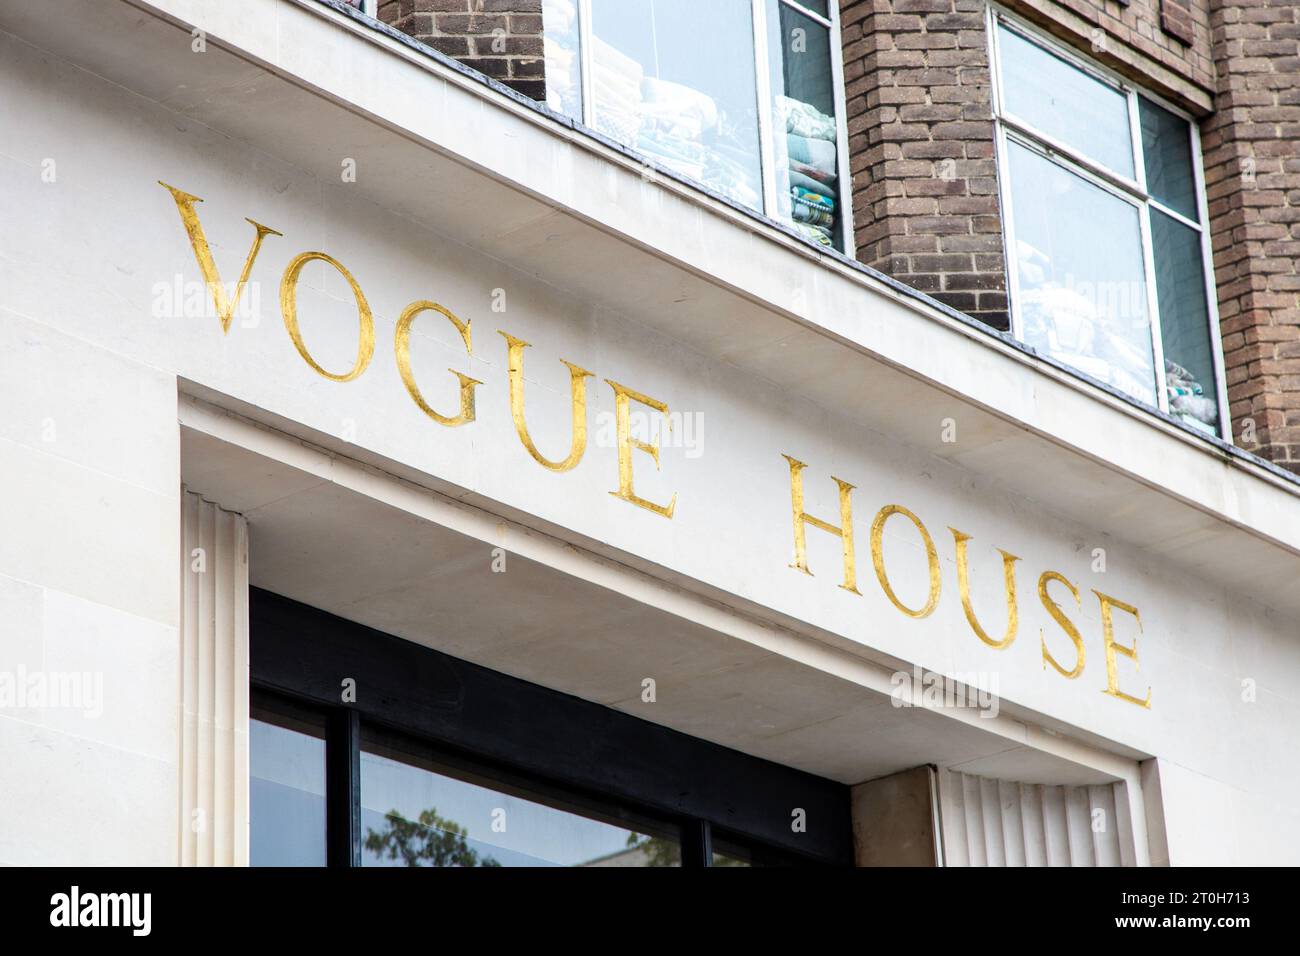 Panneau au-dessus de l'entrée principale de 1959 Vogue House, bureau de Conde Nast Britain à Hanover Square, Londres, Angleterre Banque D'Images